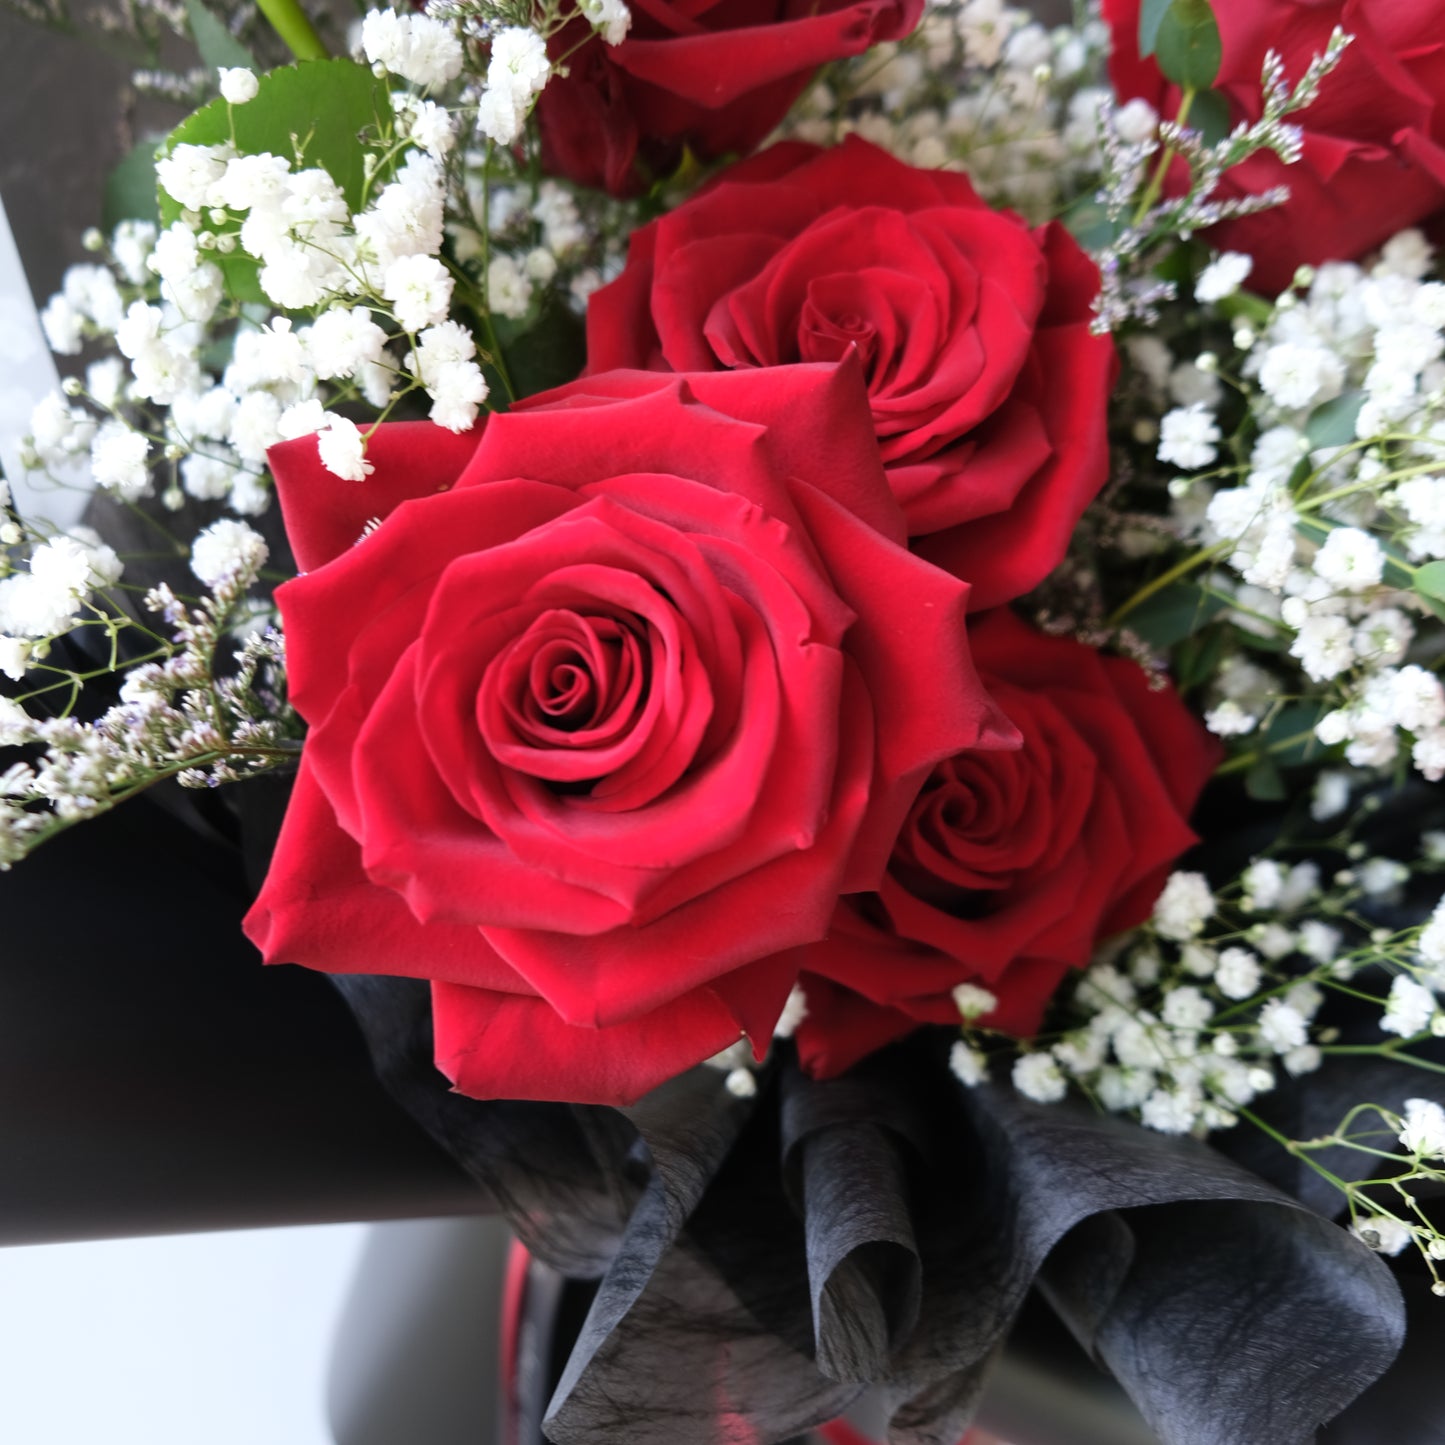 Classic Red Rose Bouquet - Le Bliss Bouquet